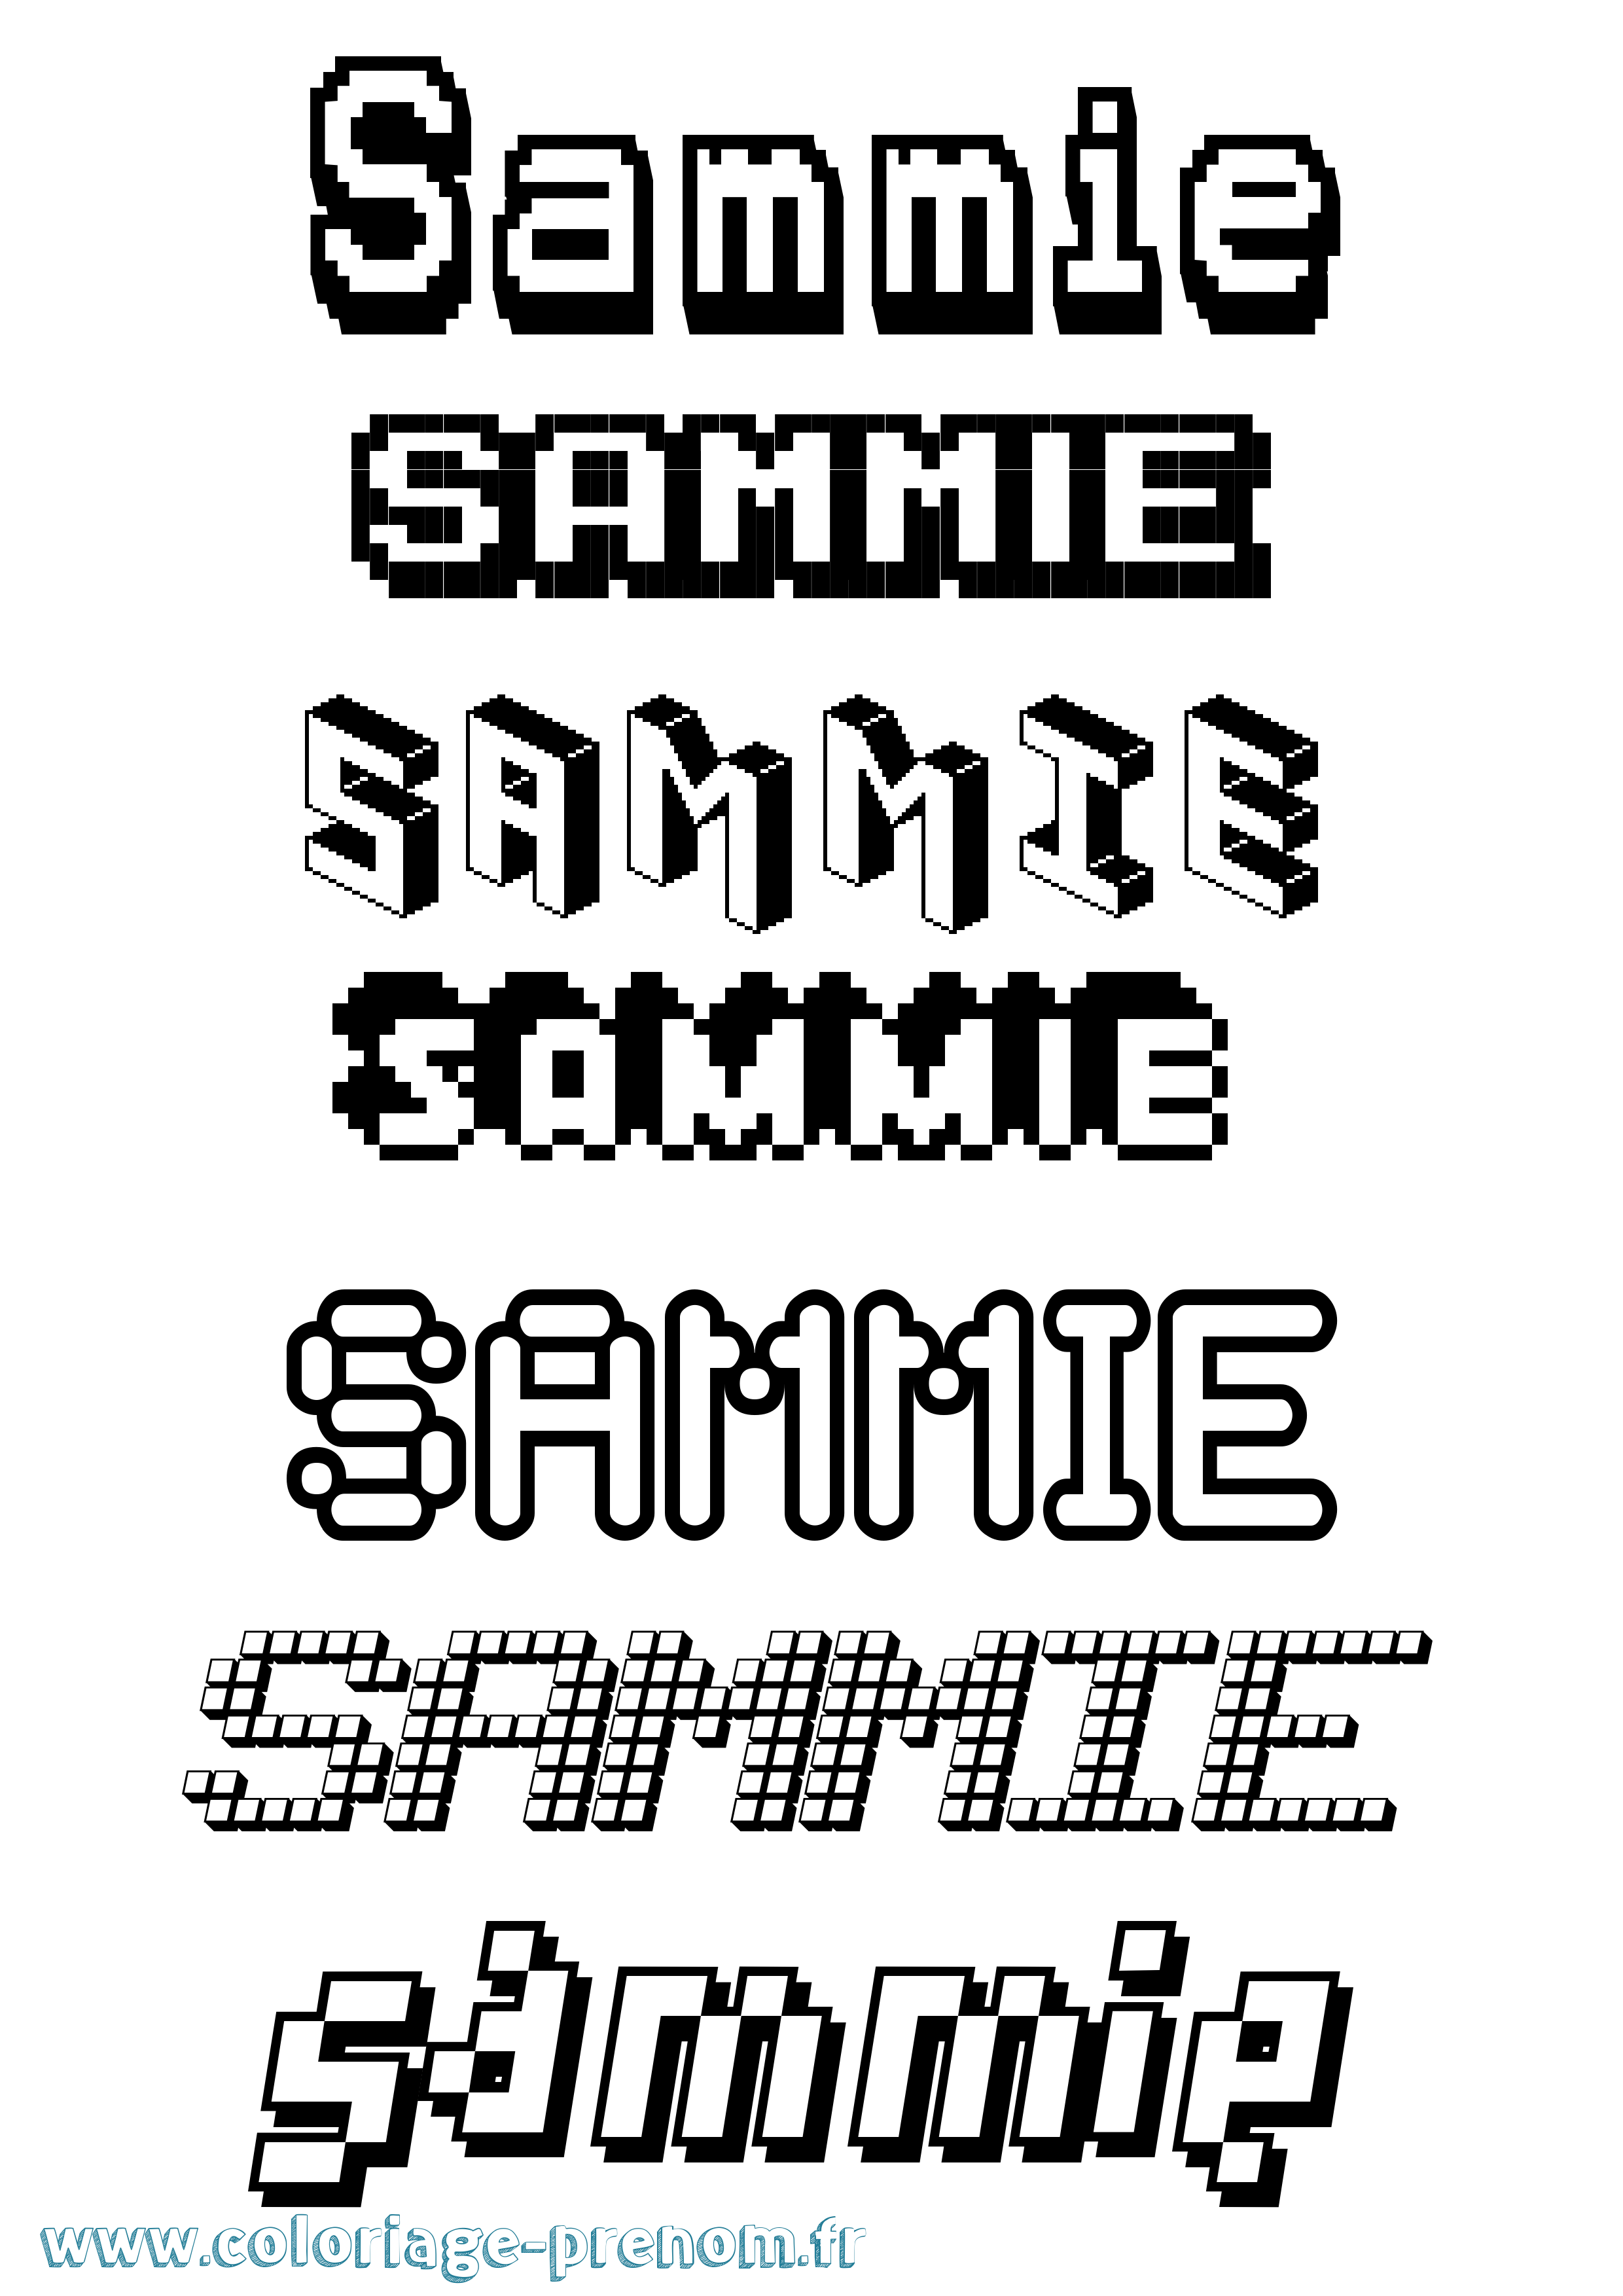 Coloriage prénom Sammie Pixel